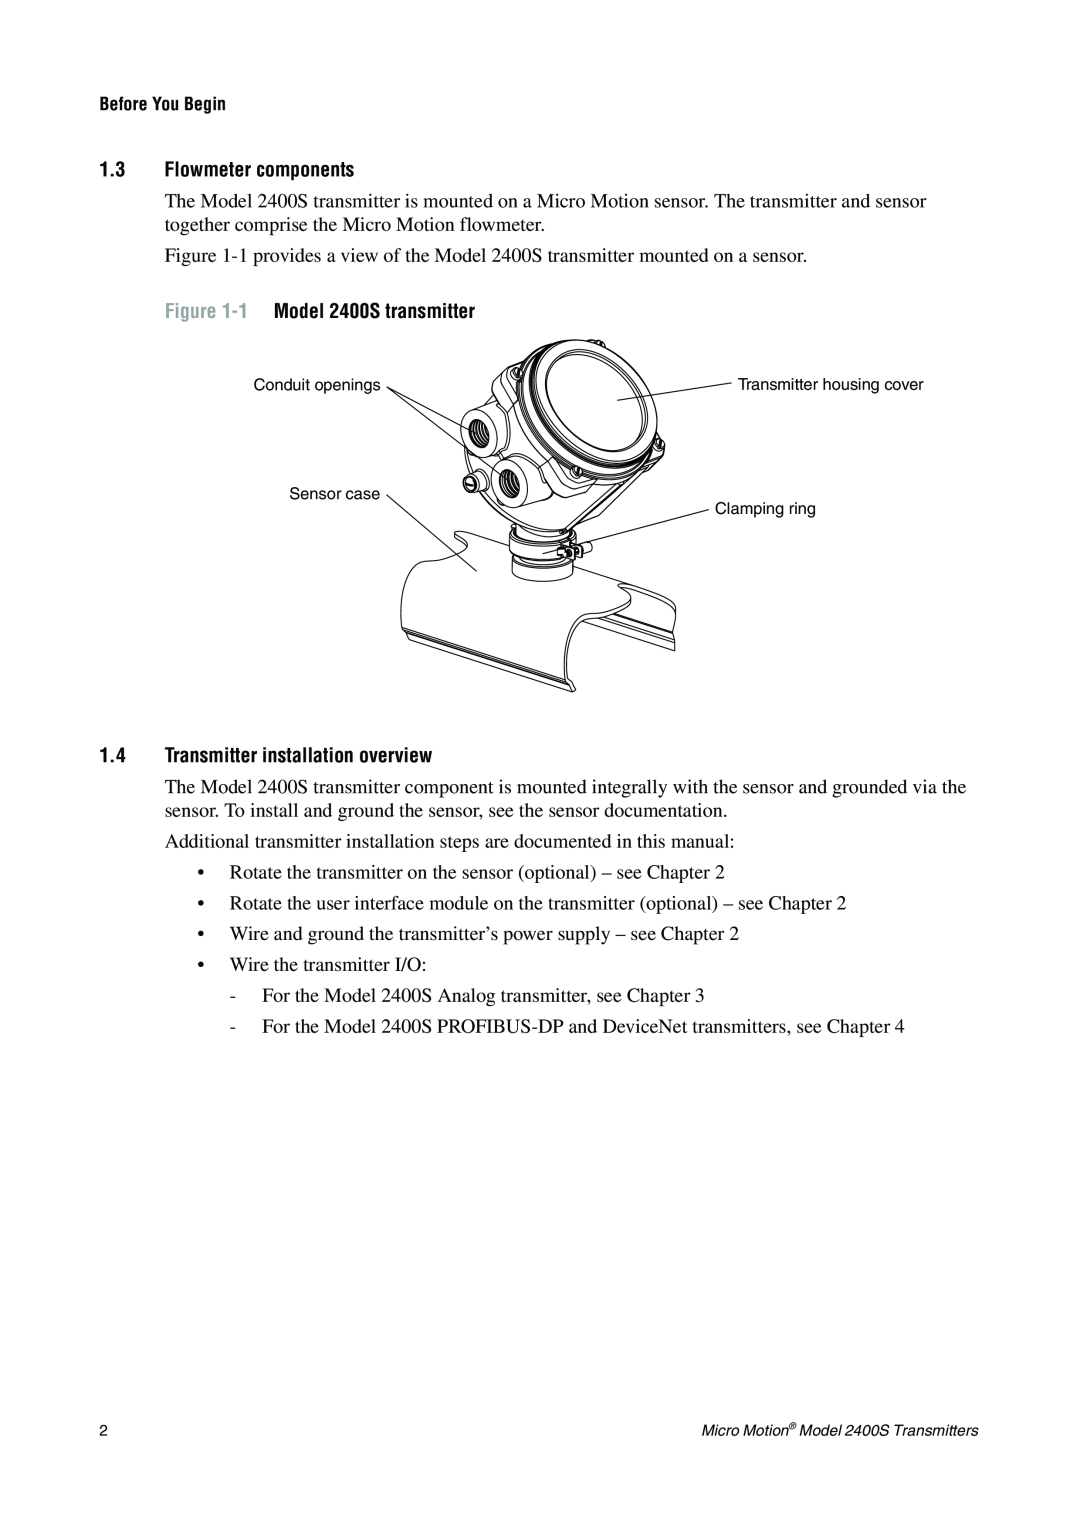 Emerson installation manual 1.3Flowmeter components, 1 Model 2400S transmitter, 1.4Transmitter installation overview 